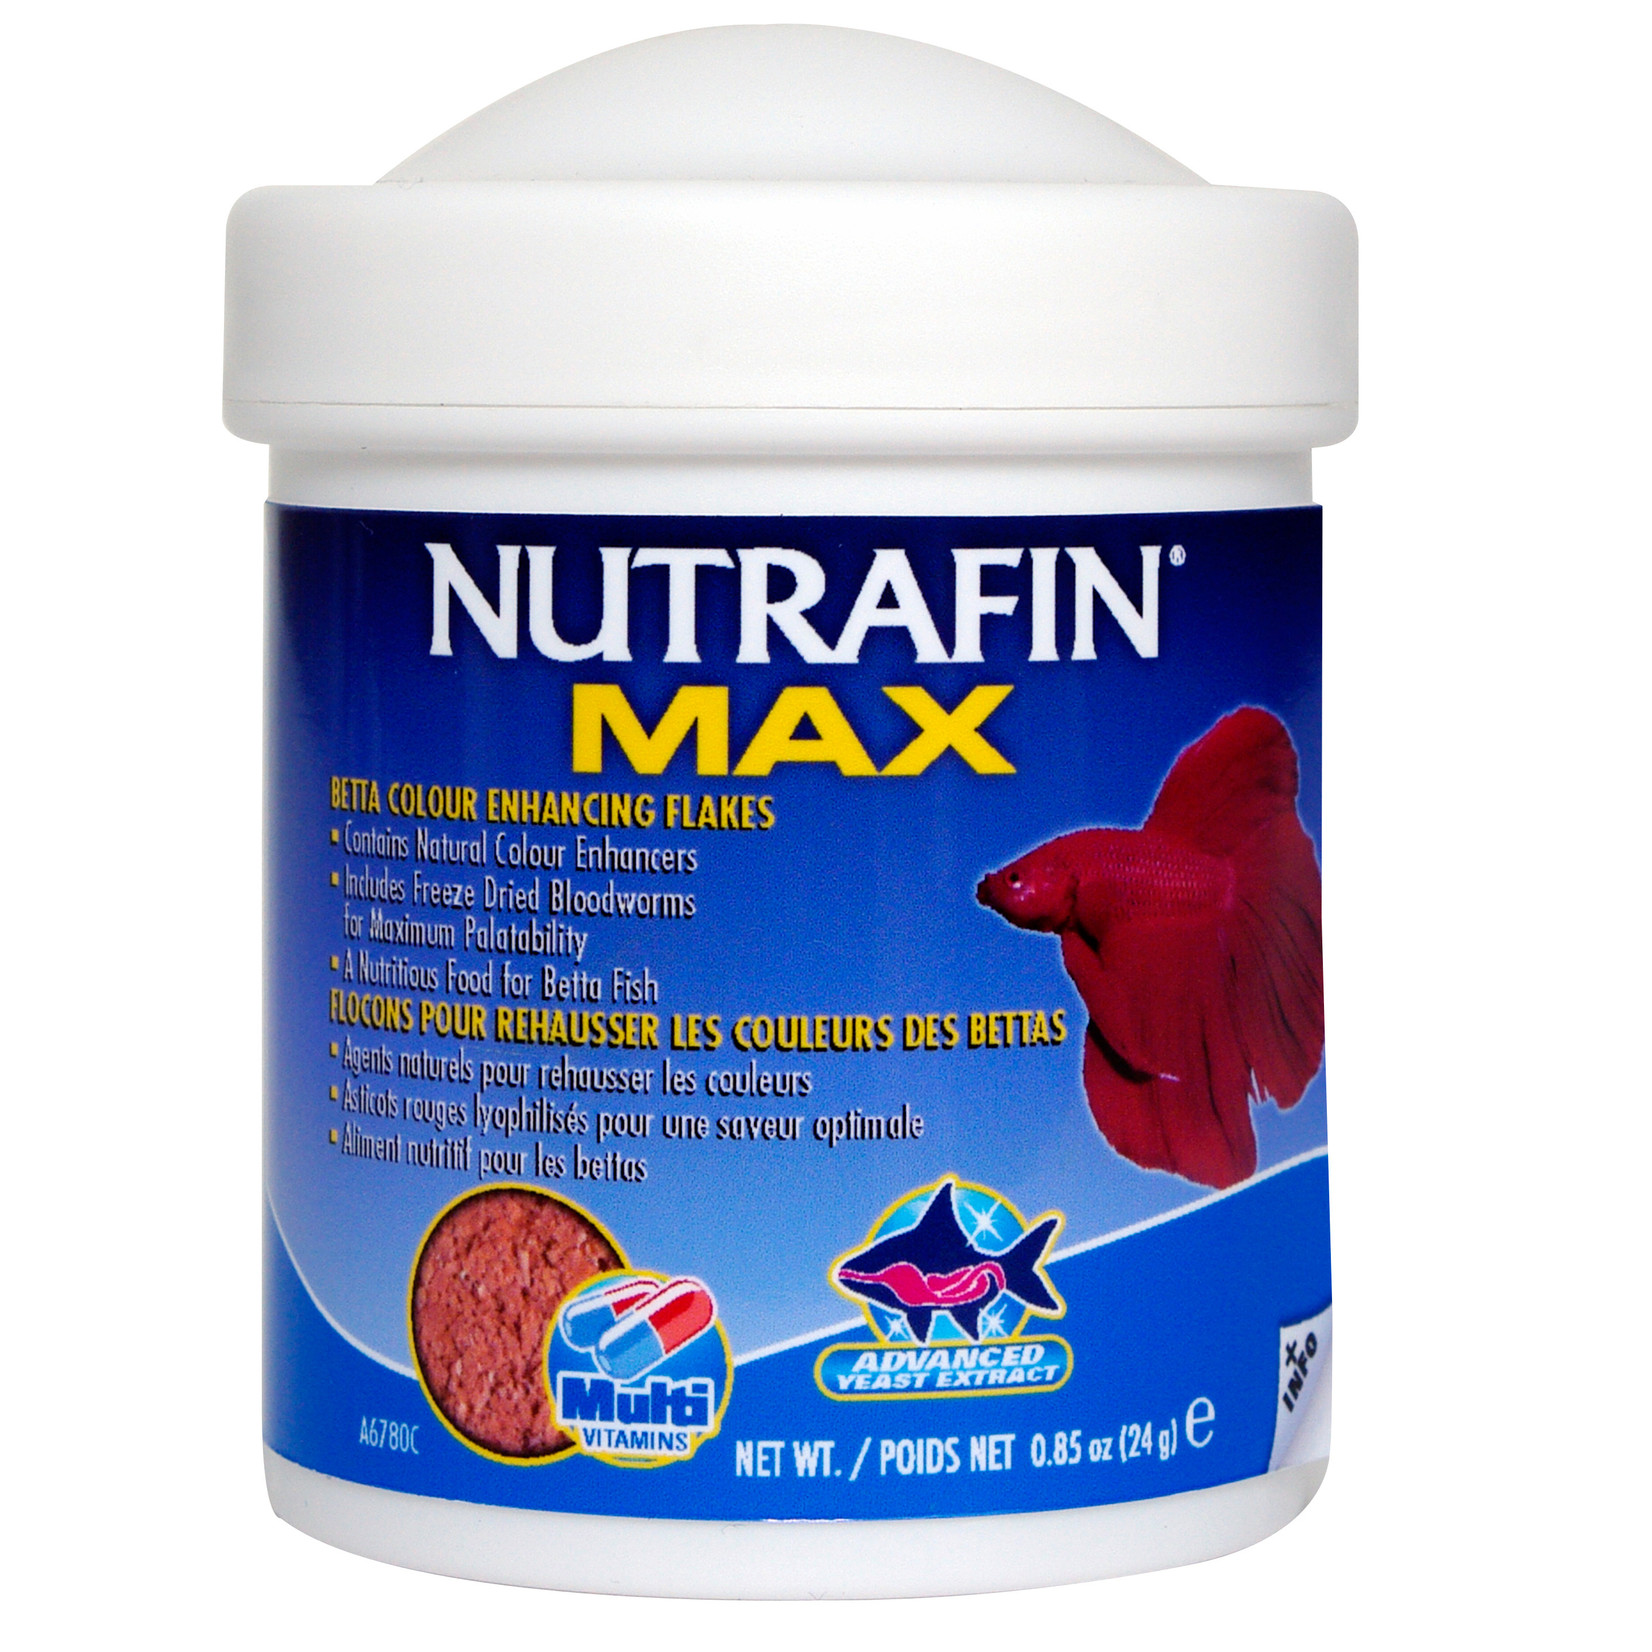 NUTRAFIN NFMBettaClr.Enhncng.Flakes24g (0.85oz)-V